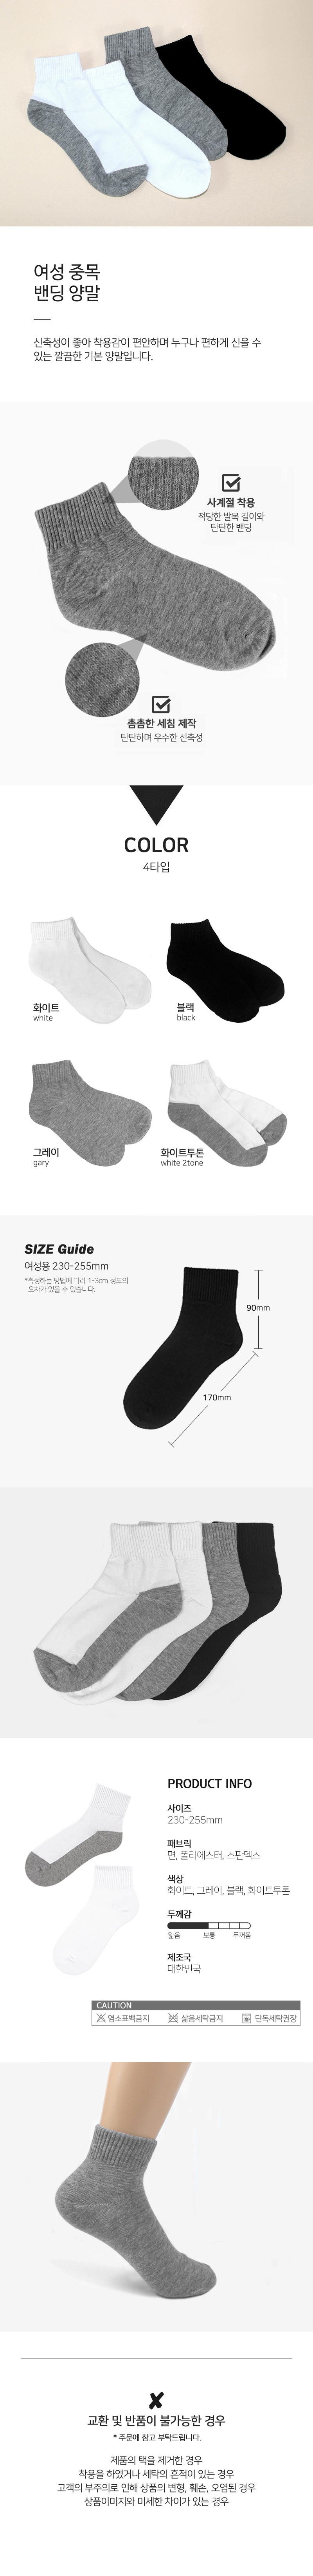 socks_00002.jpg